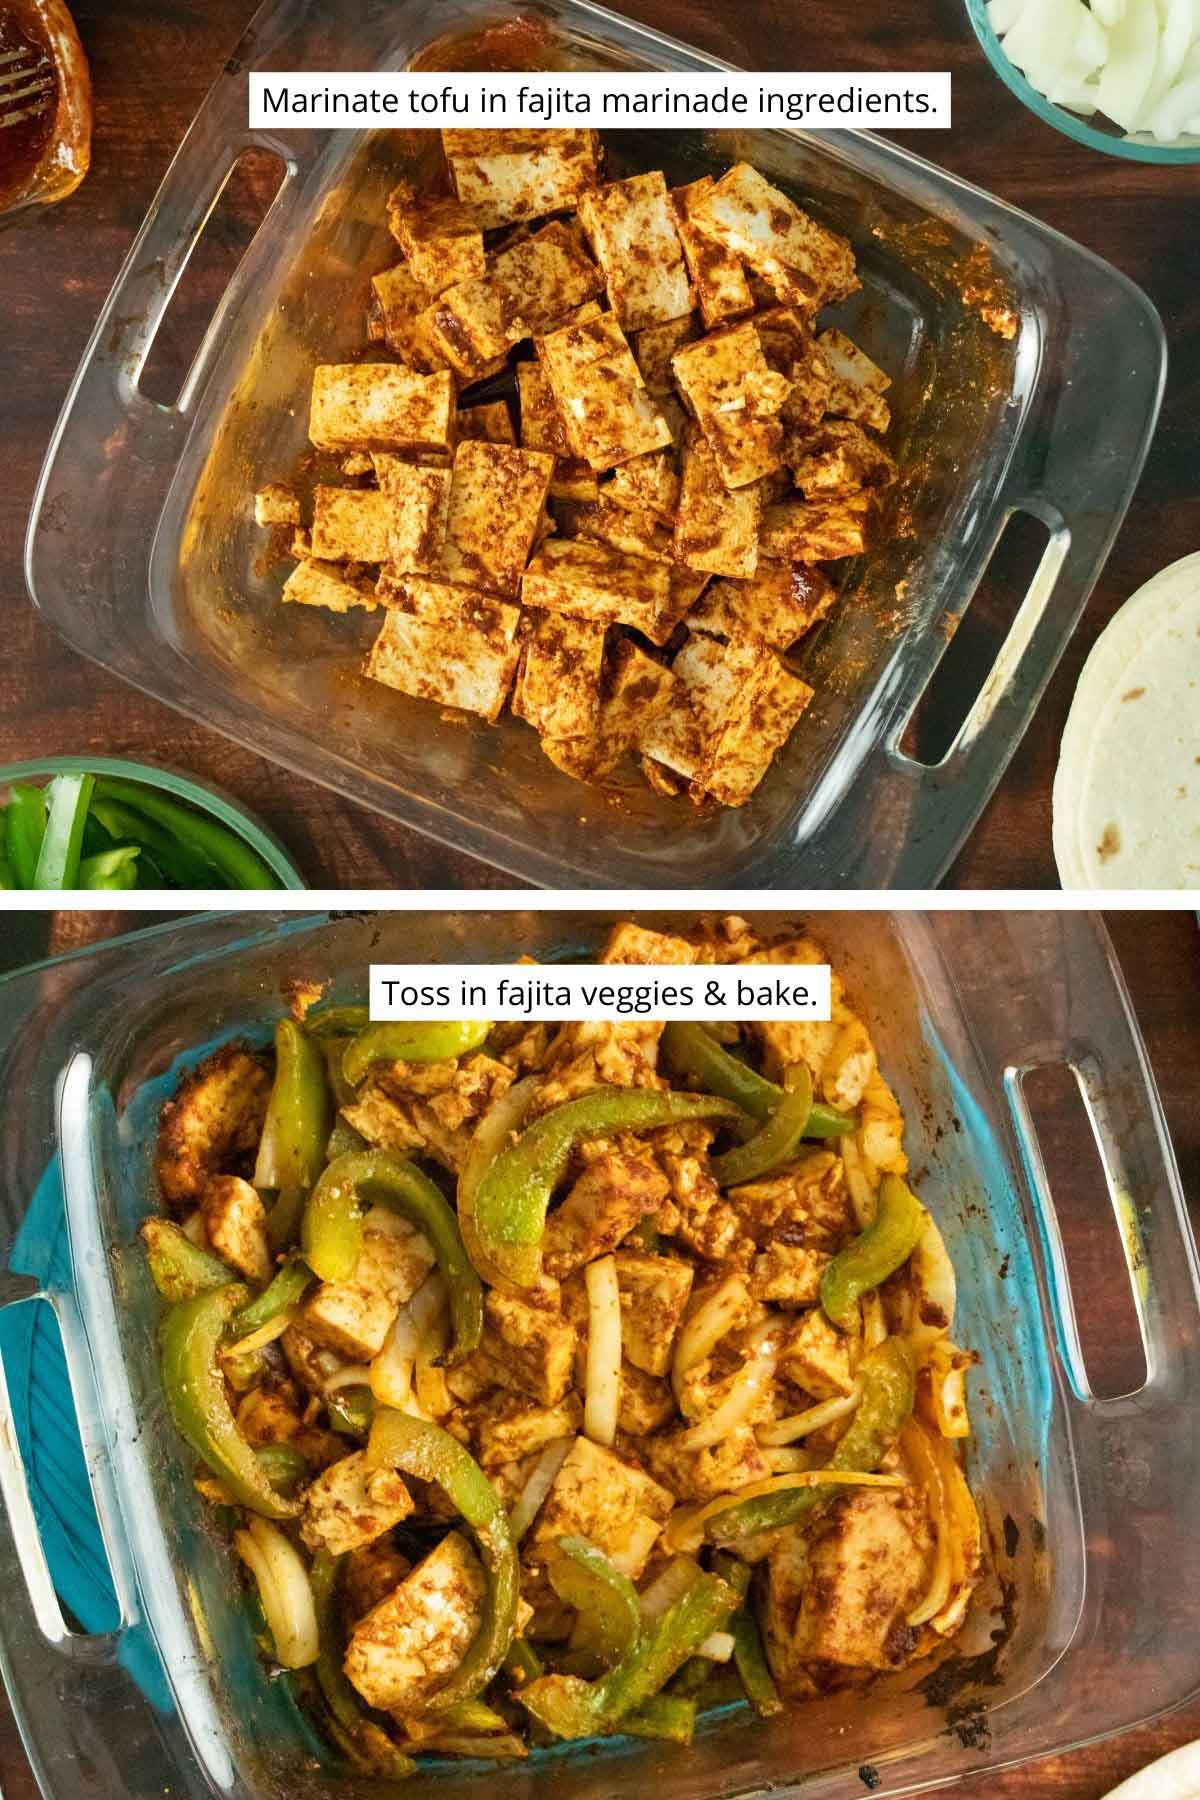 image collage showing tofu coated in the fajita marinade, and the marinated tofu tossed with fajita veggies in the baking pan